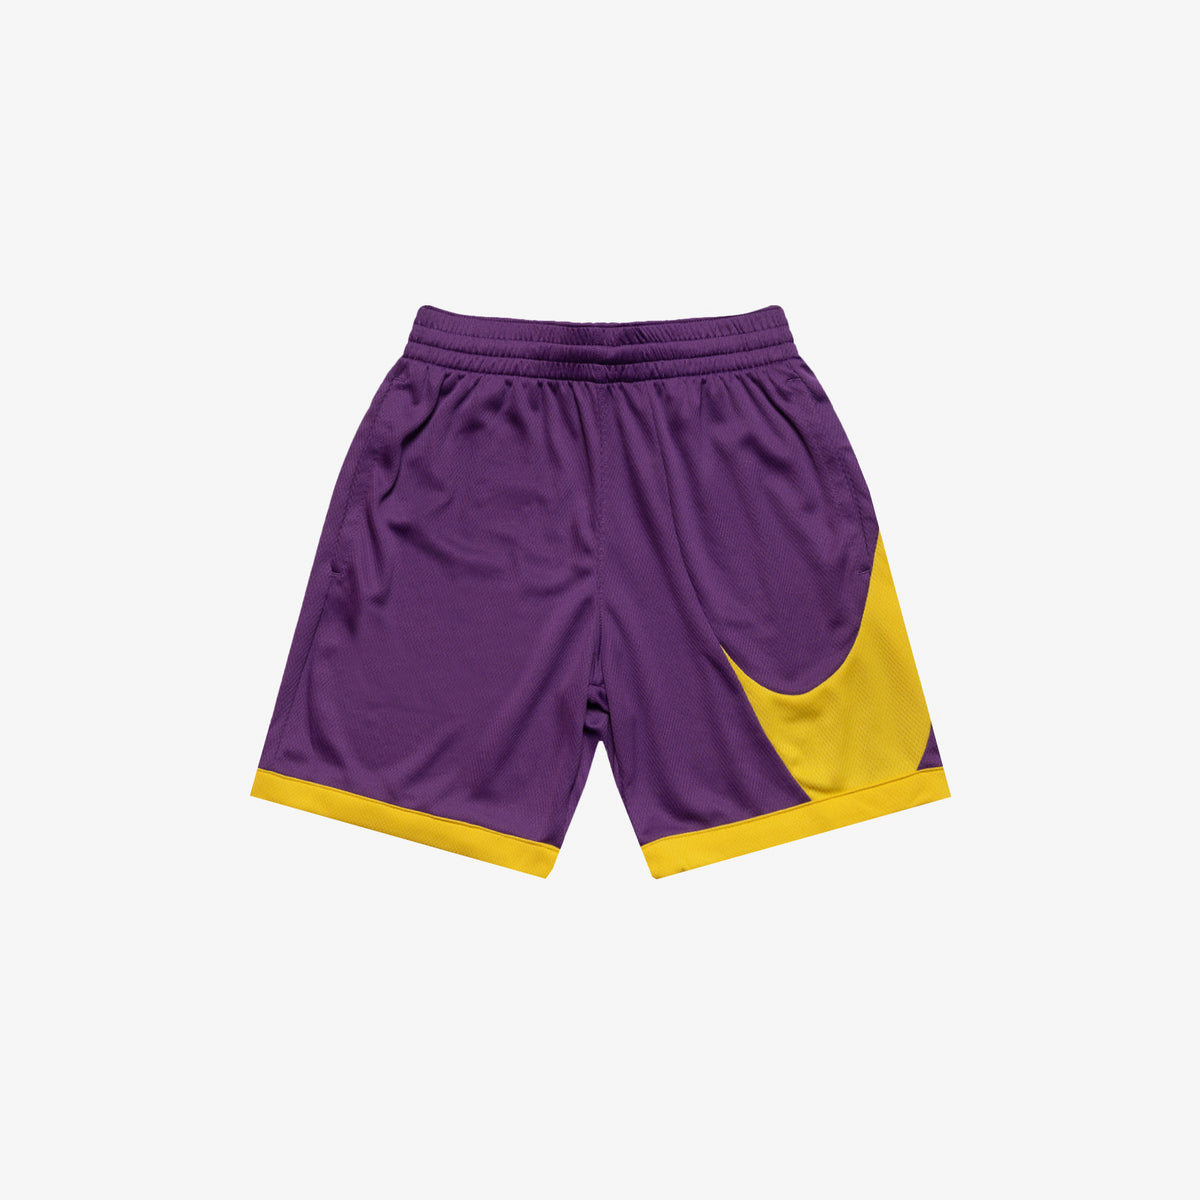 Nike Dri-FIT Youth Basketball Shorts - Purple